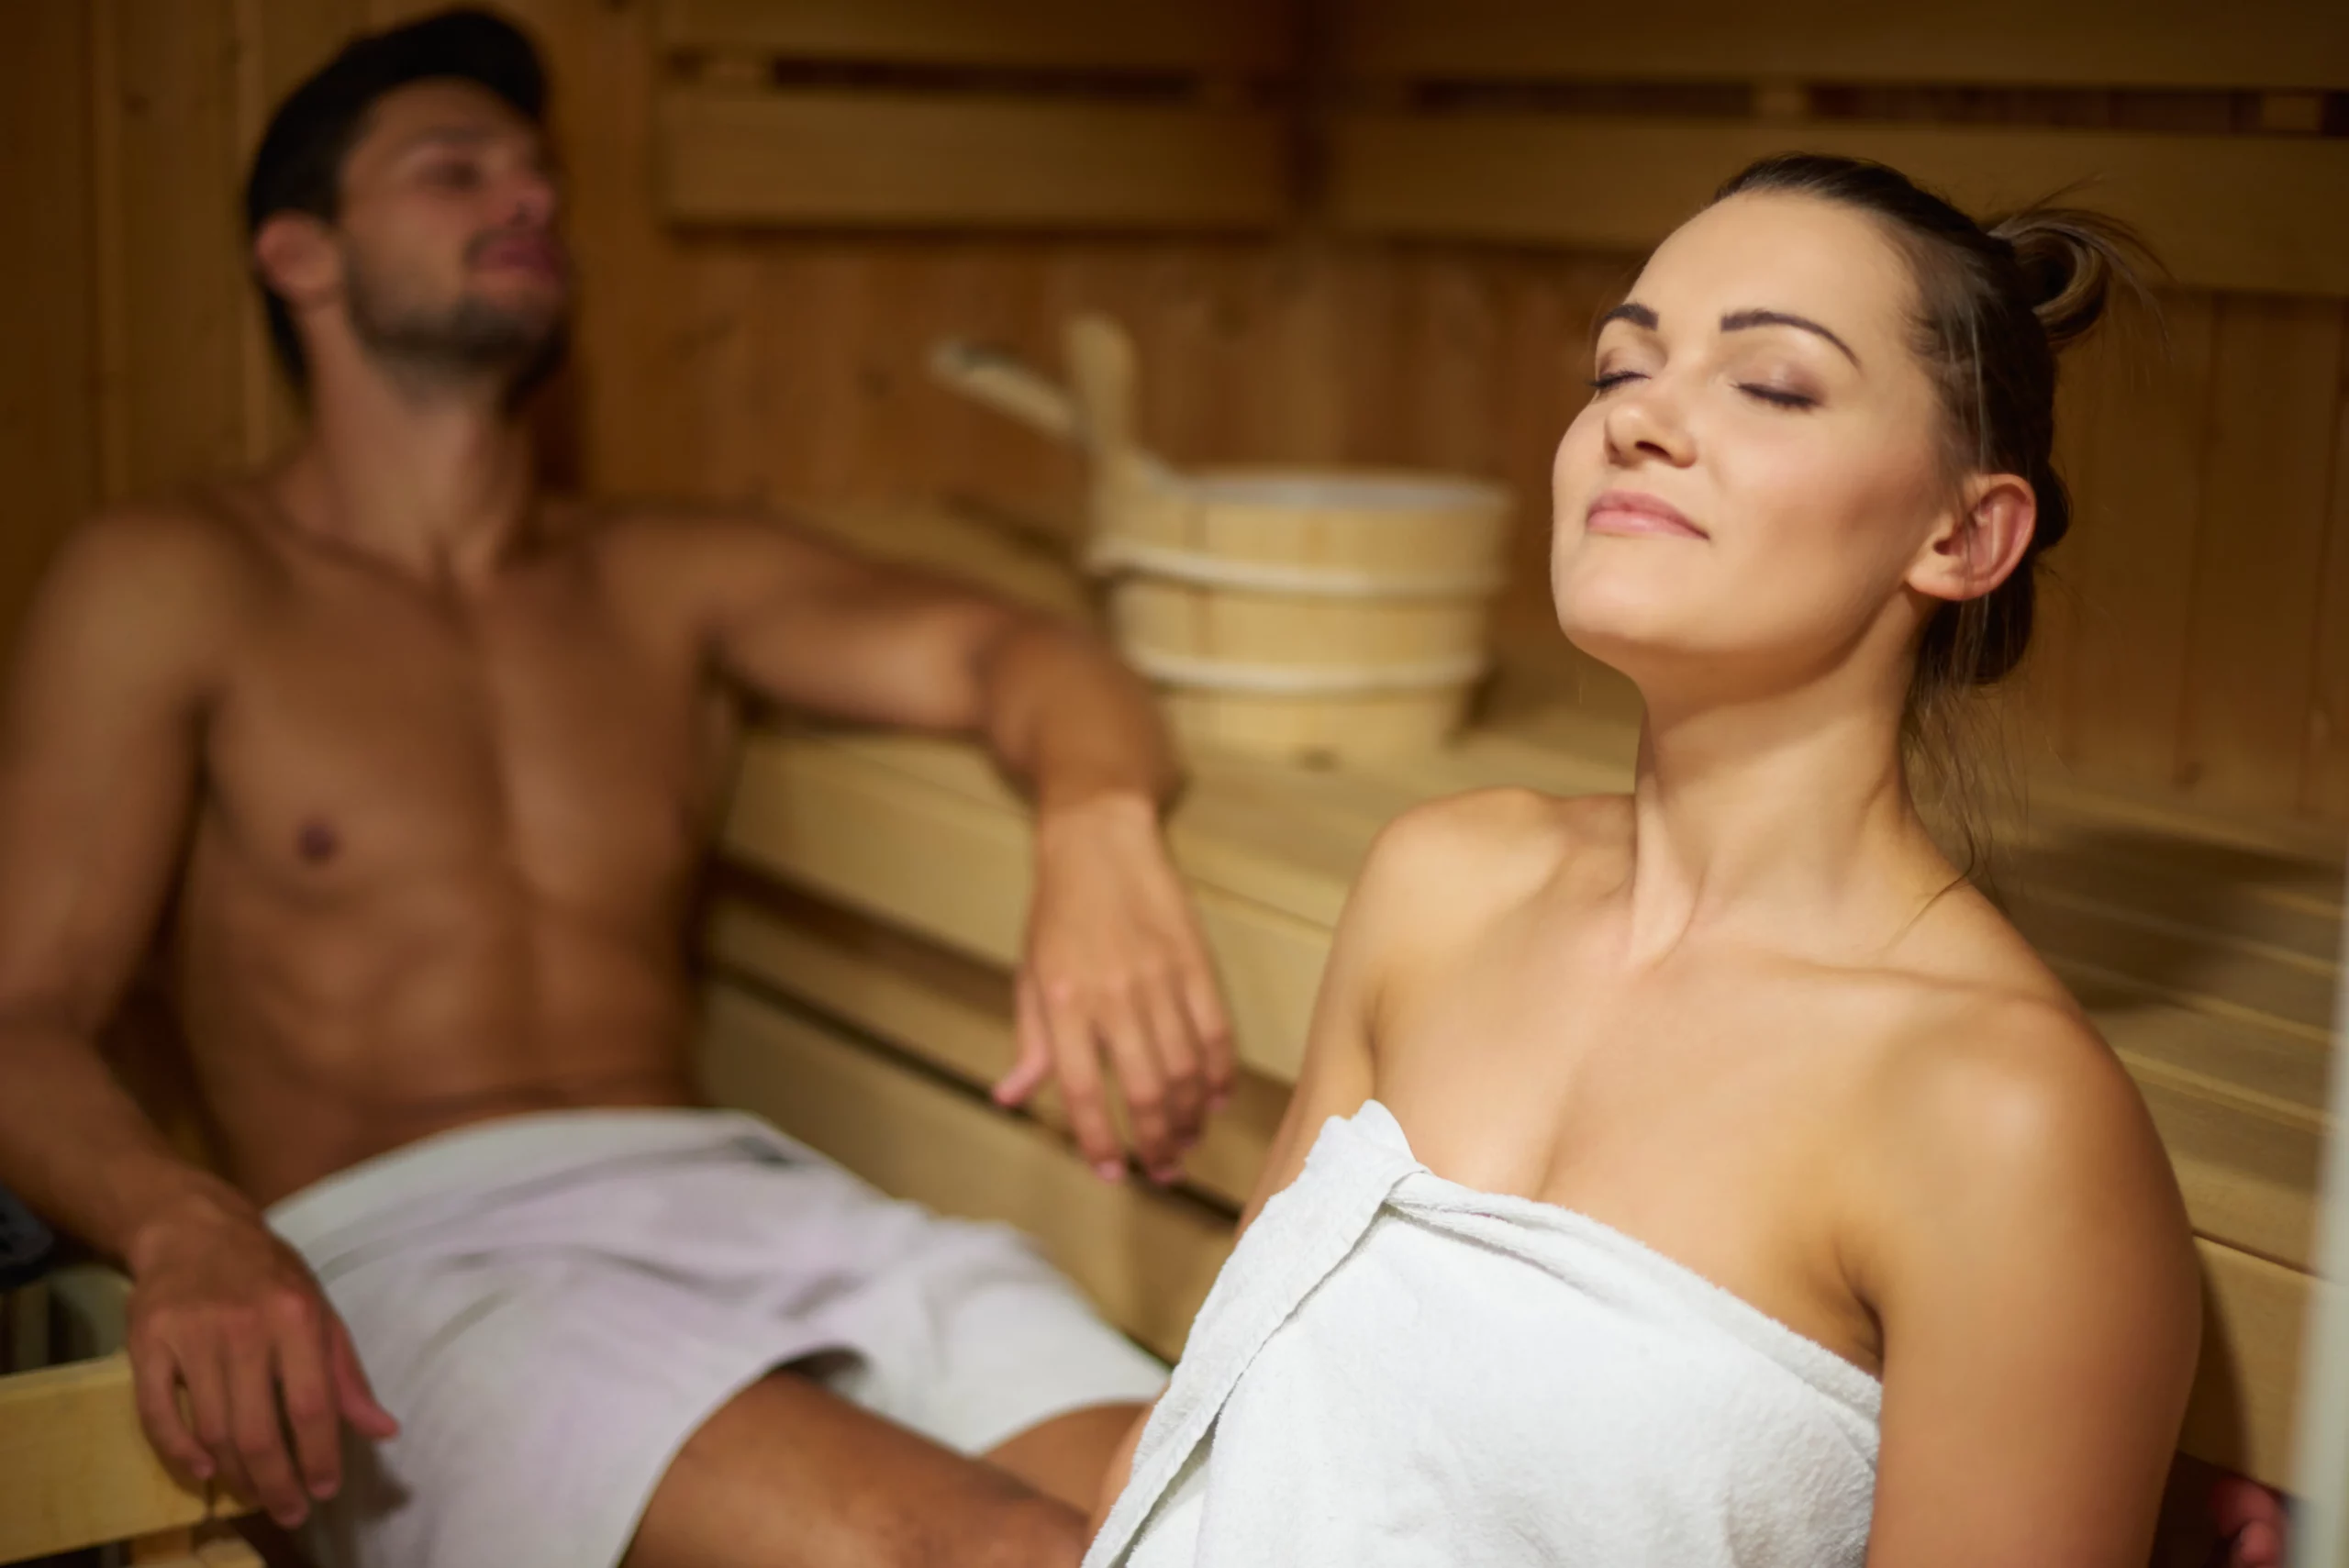 Zwei Personen entspannen in einer finnischen Sauna.